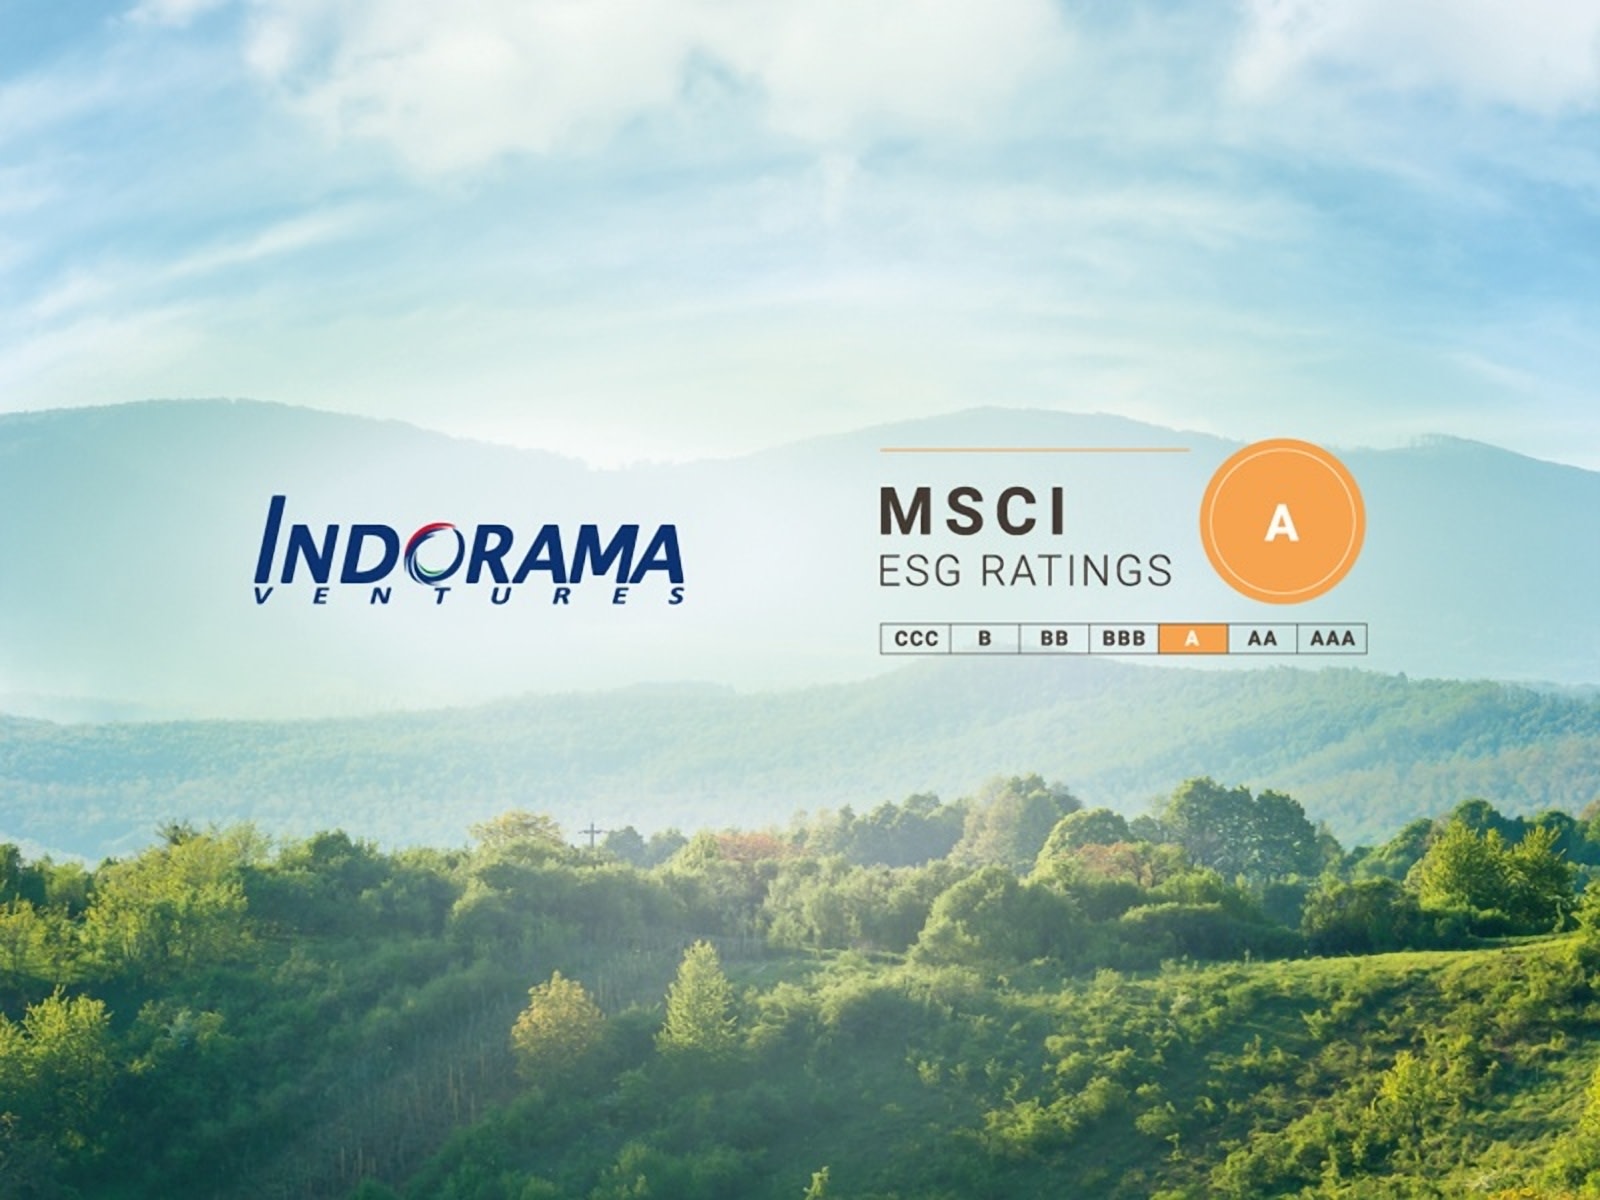 KnowESG_Indorama msci ratings